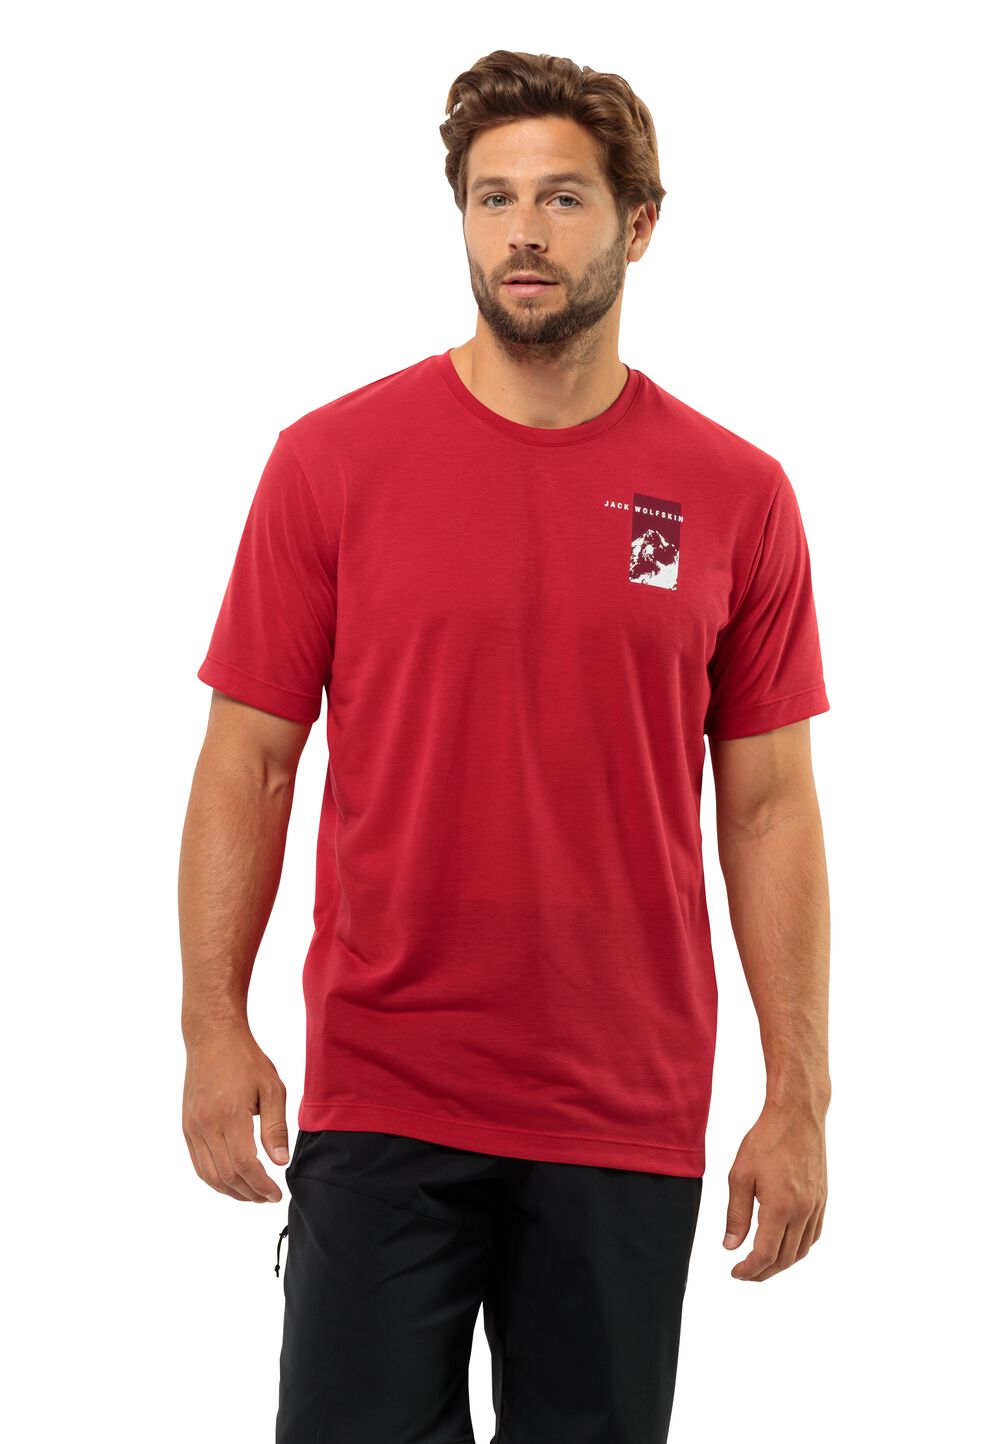 Jack Wolfskin Vonnan S S Graphic T-Shirt Men Functioneel shirt Heren L rood red glow